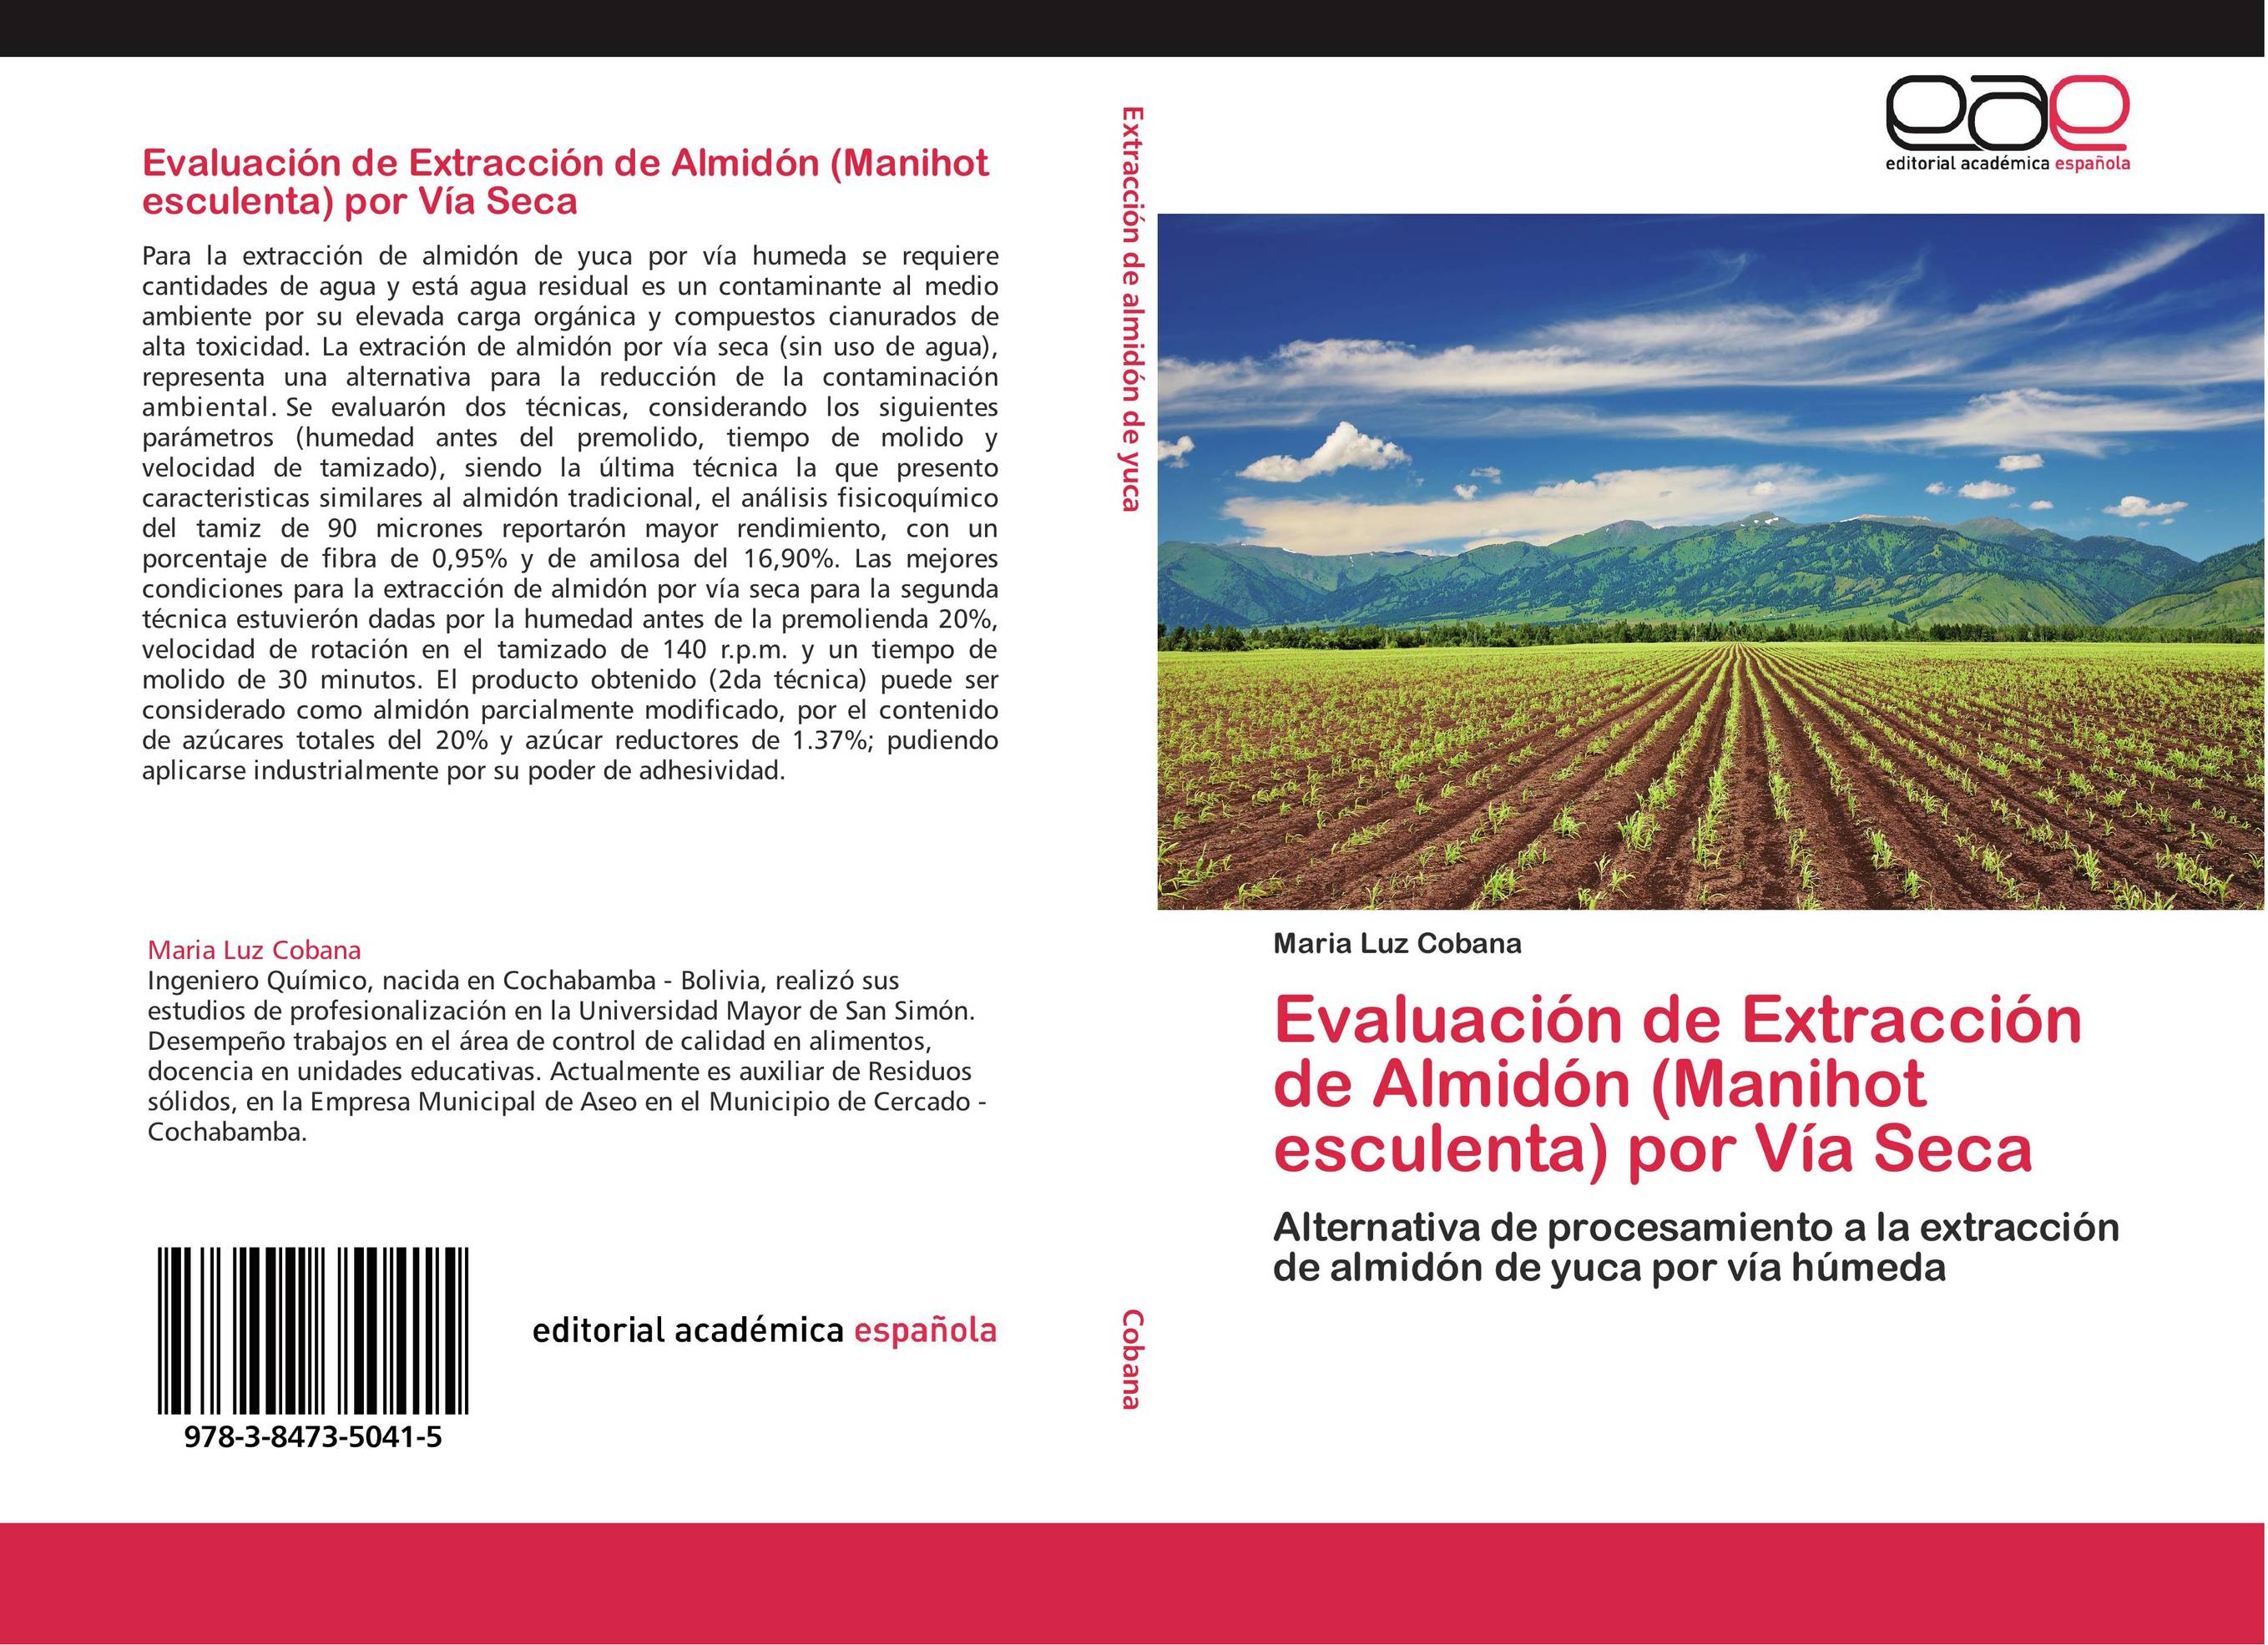 Evaluación de Extracción de Almidón (Manihot esculenta) por Vía Seca